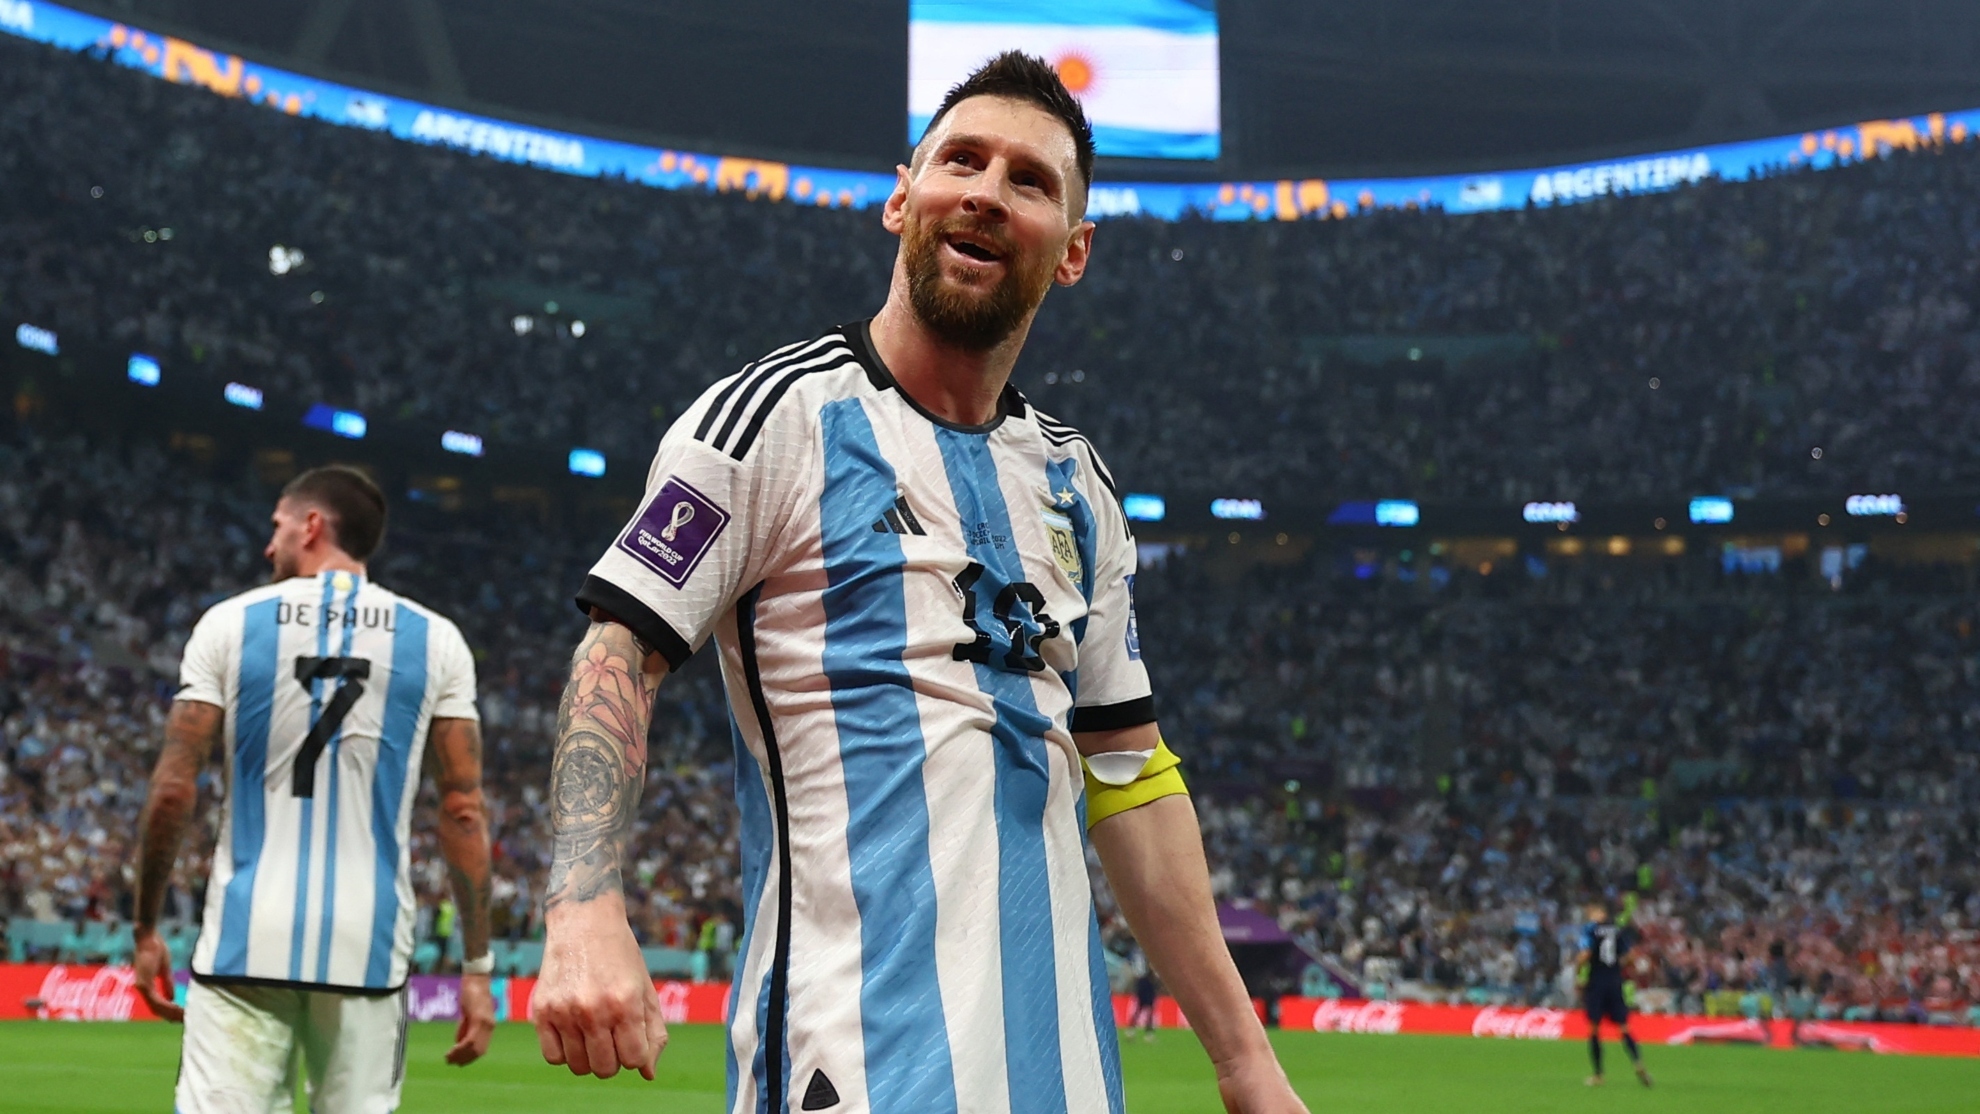 Selección Leo Messi: "Esto la camiseta, la gente, la gloria, vamos a dejar todo" | MARCA Argentina